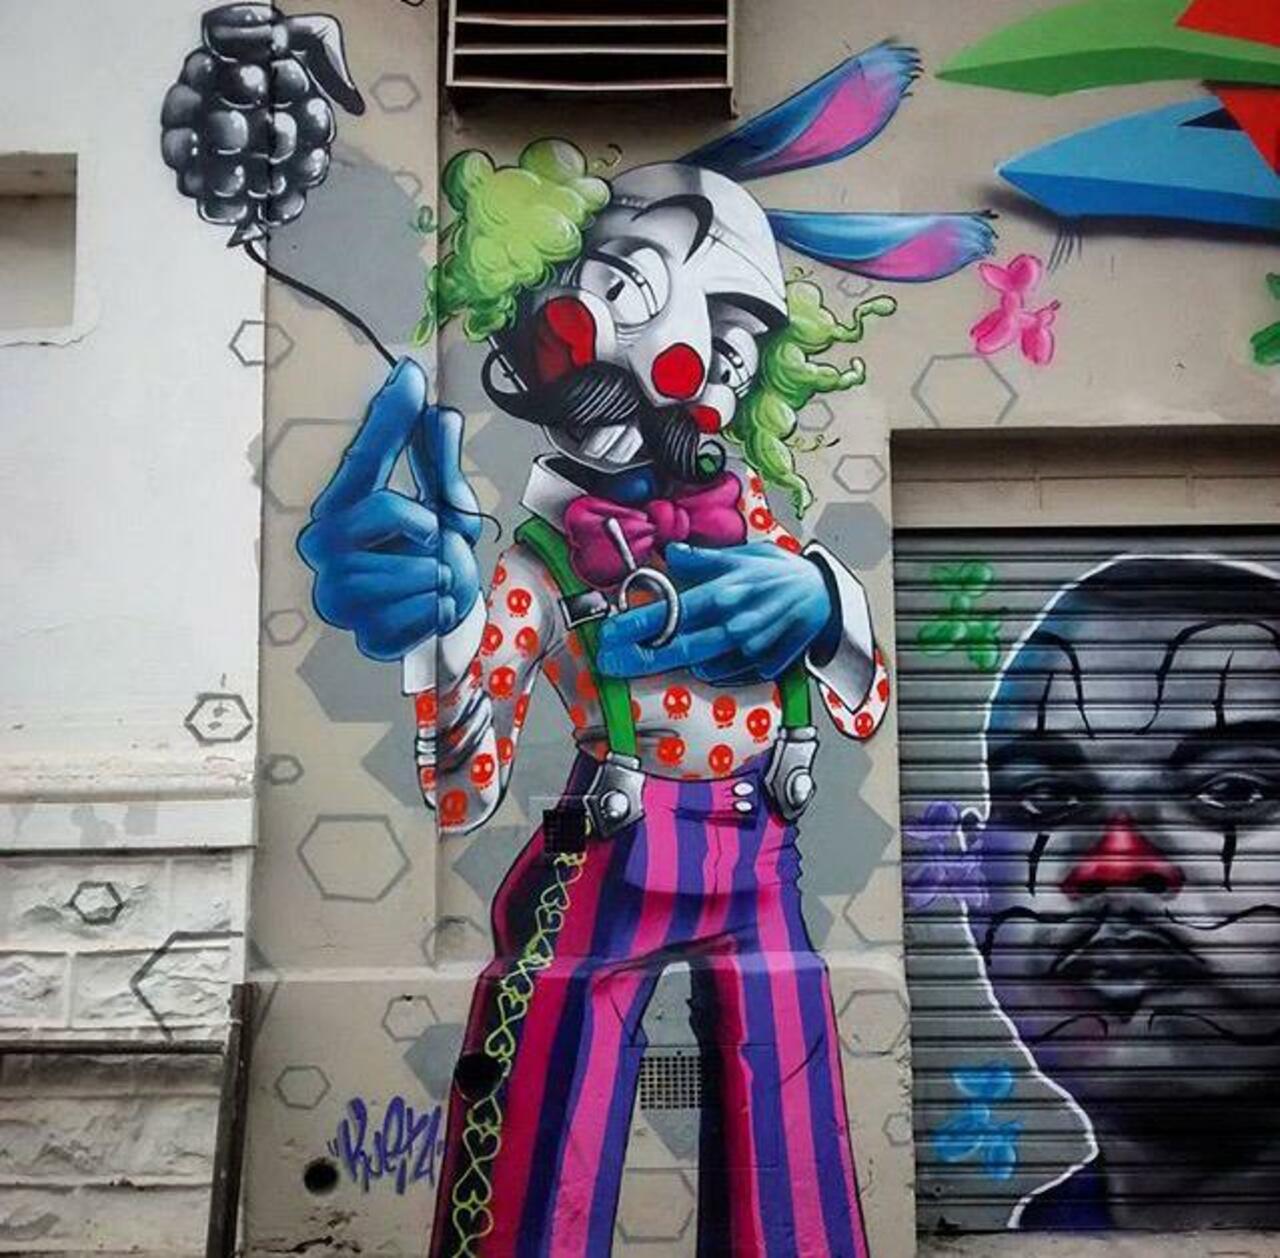 New Street Art by Karen Kueia 

#art #graffiti #mural #streetart http://t.co/1rMpuqvH8k https://goo.gl/t4fpx2